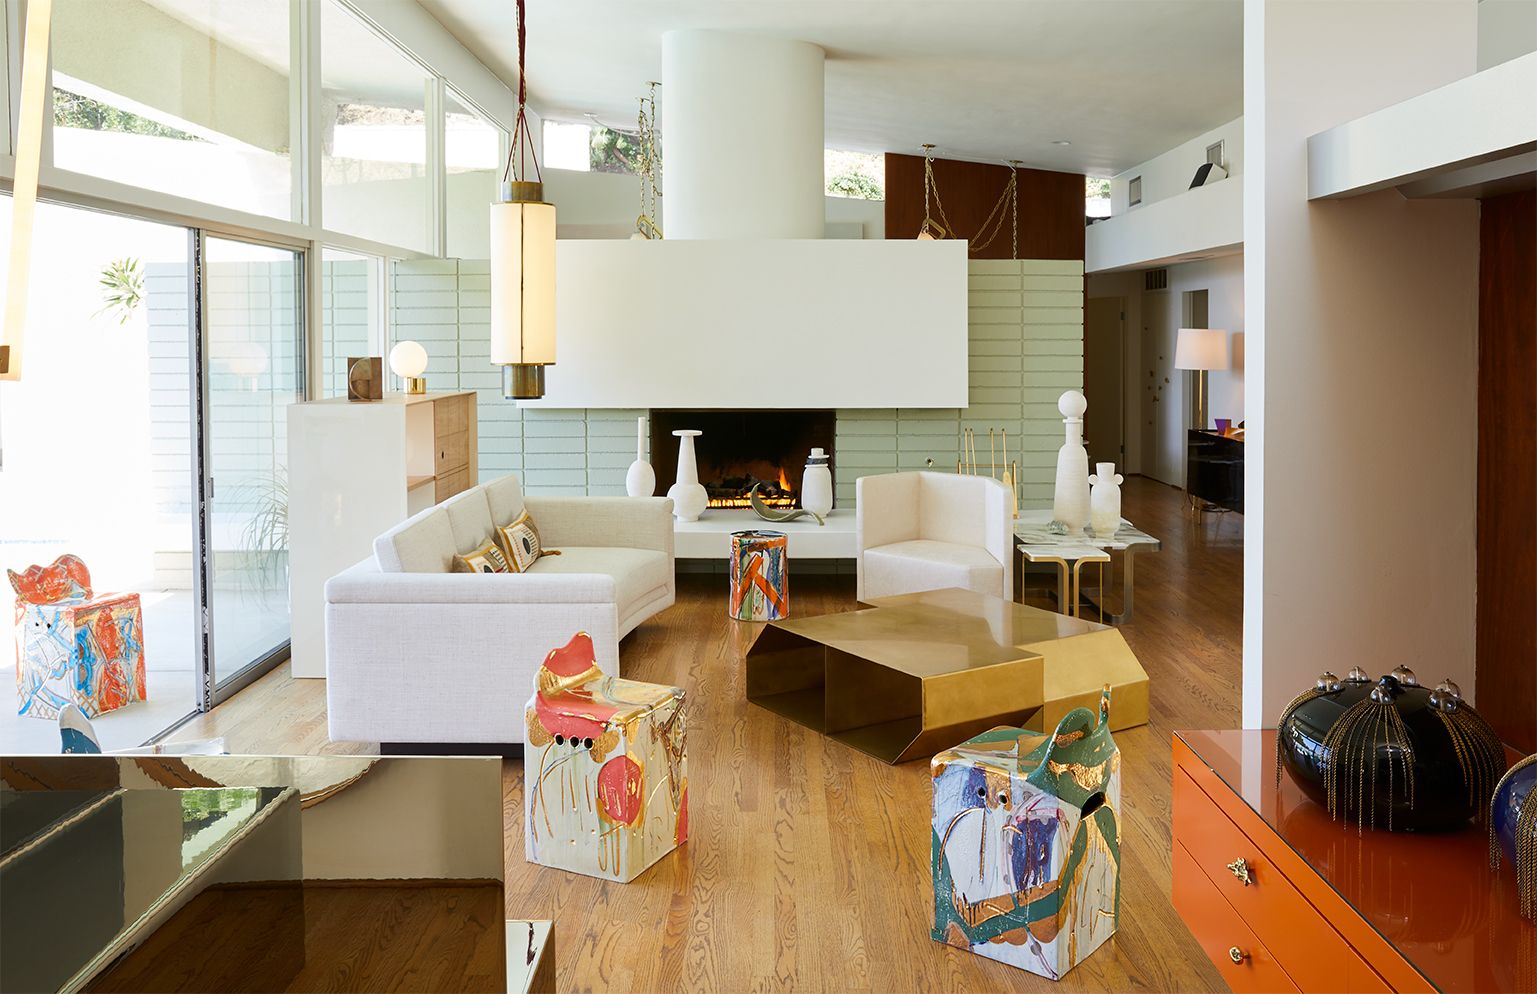 Retail Design Decor Inspiration - Store Design To Inspire Your Home Decor